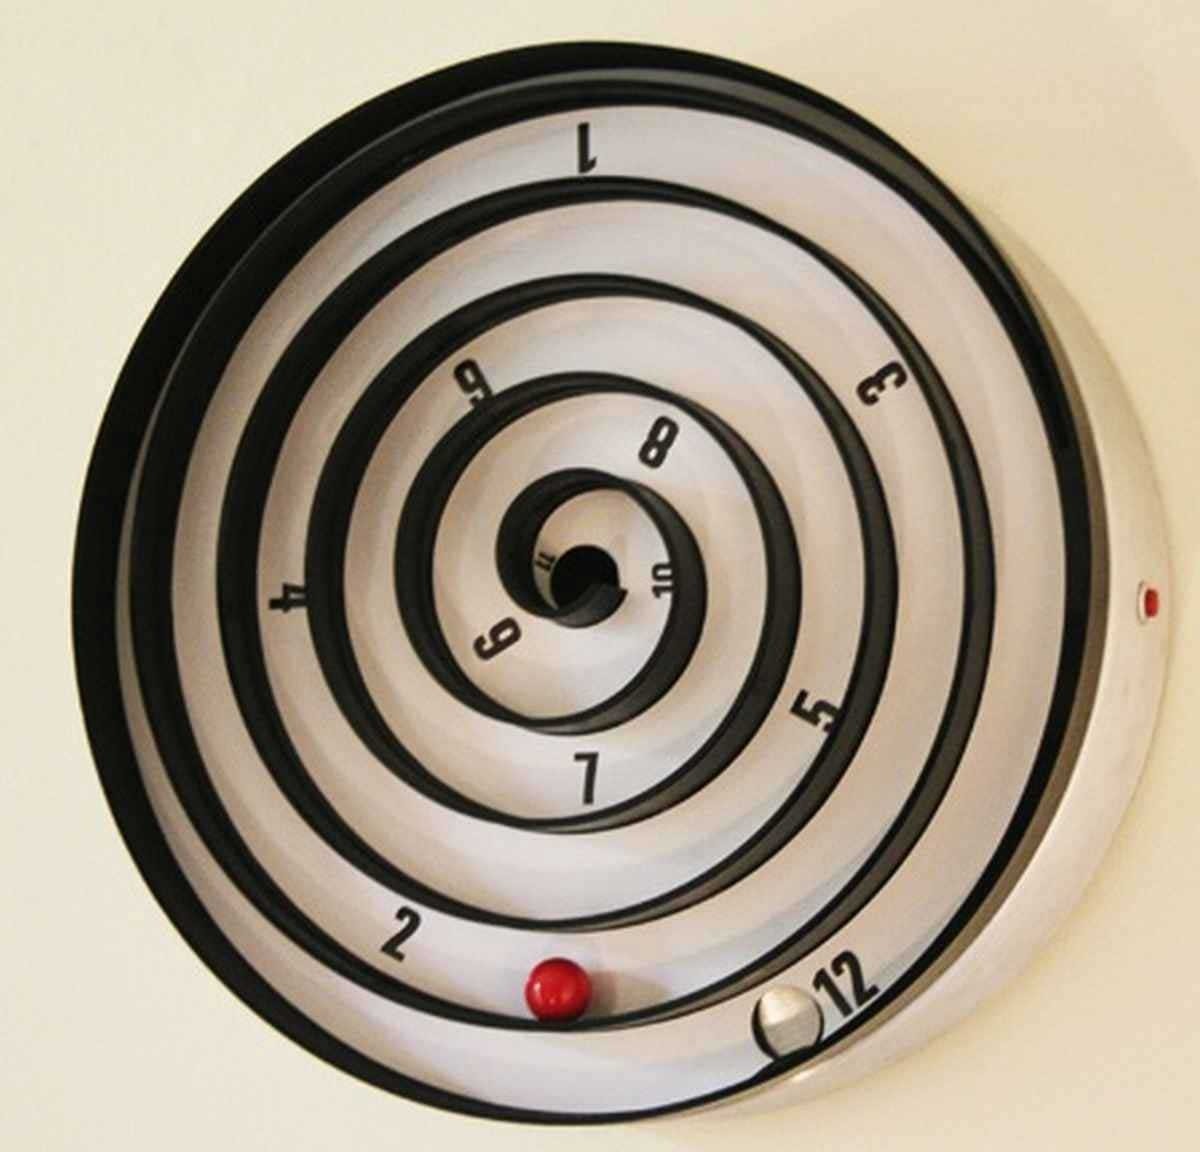 Best wall clock design